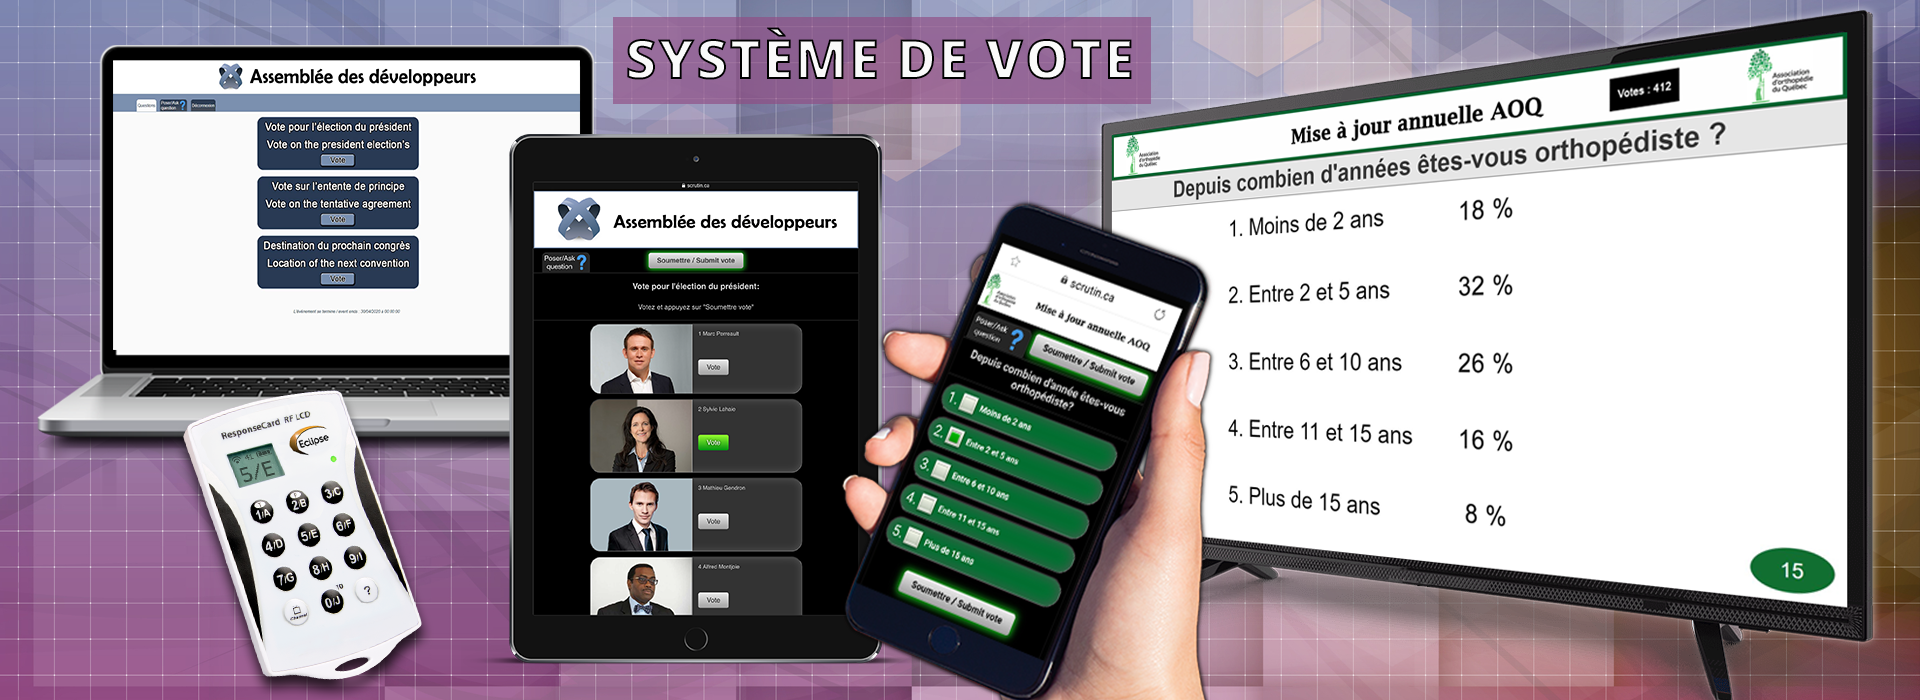 systeme de vote interactif - vote en ligne